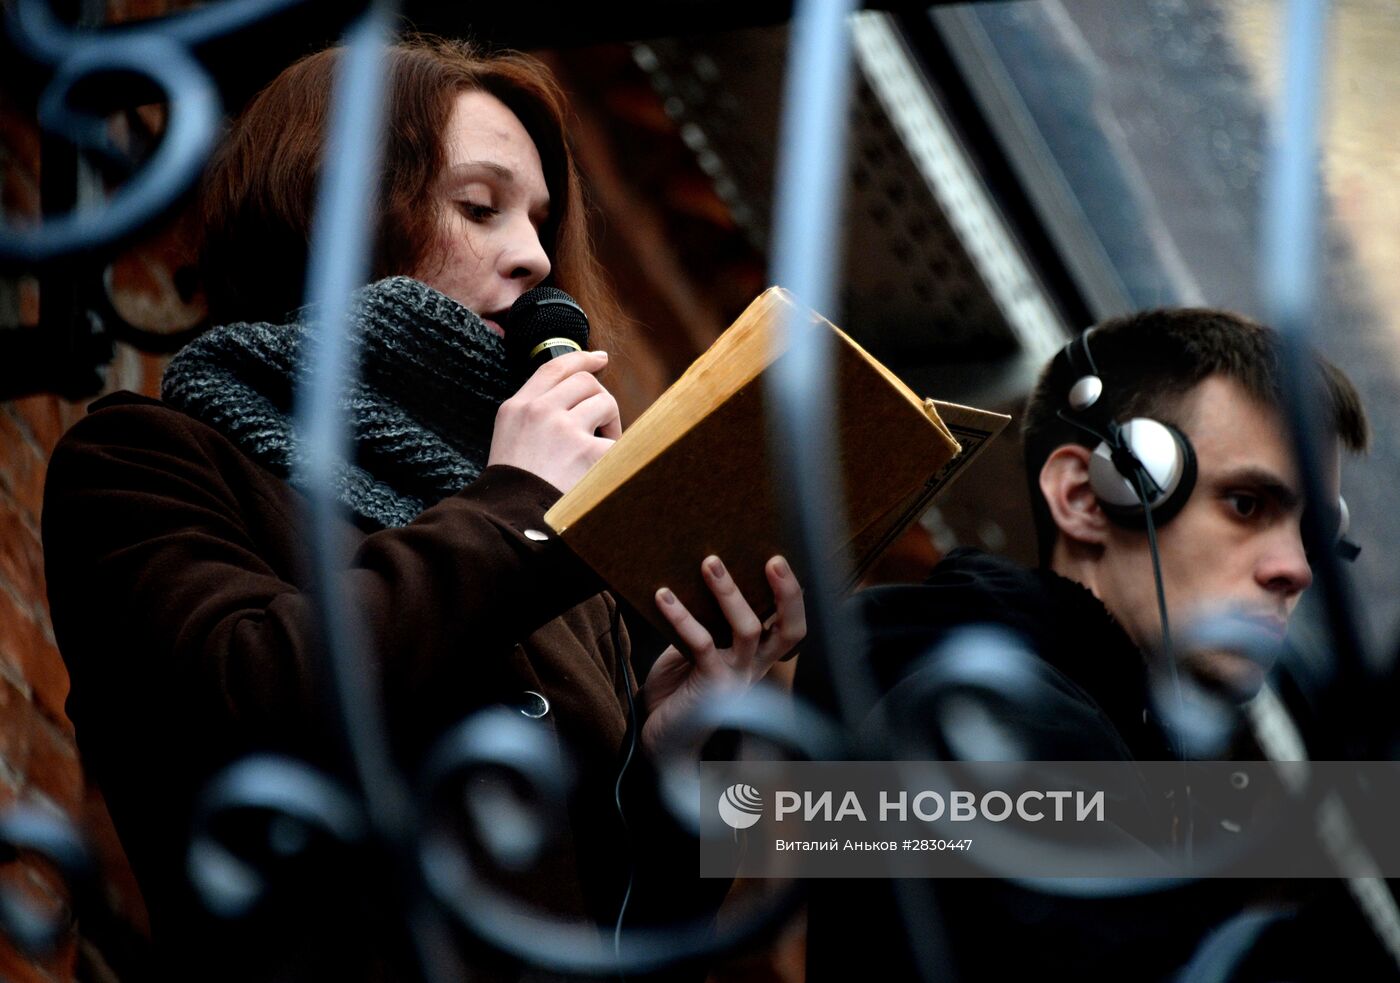 Всероссийская акция "Библионочь" в городах России